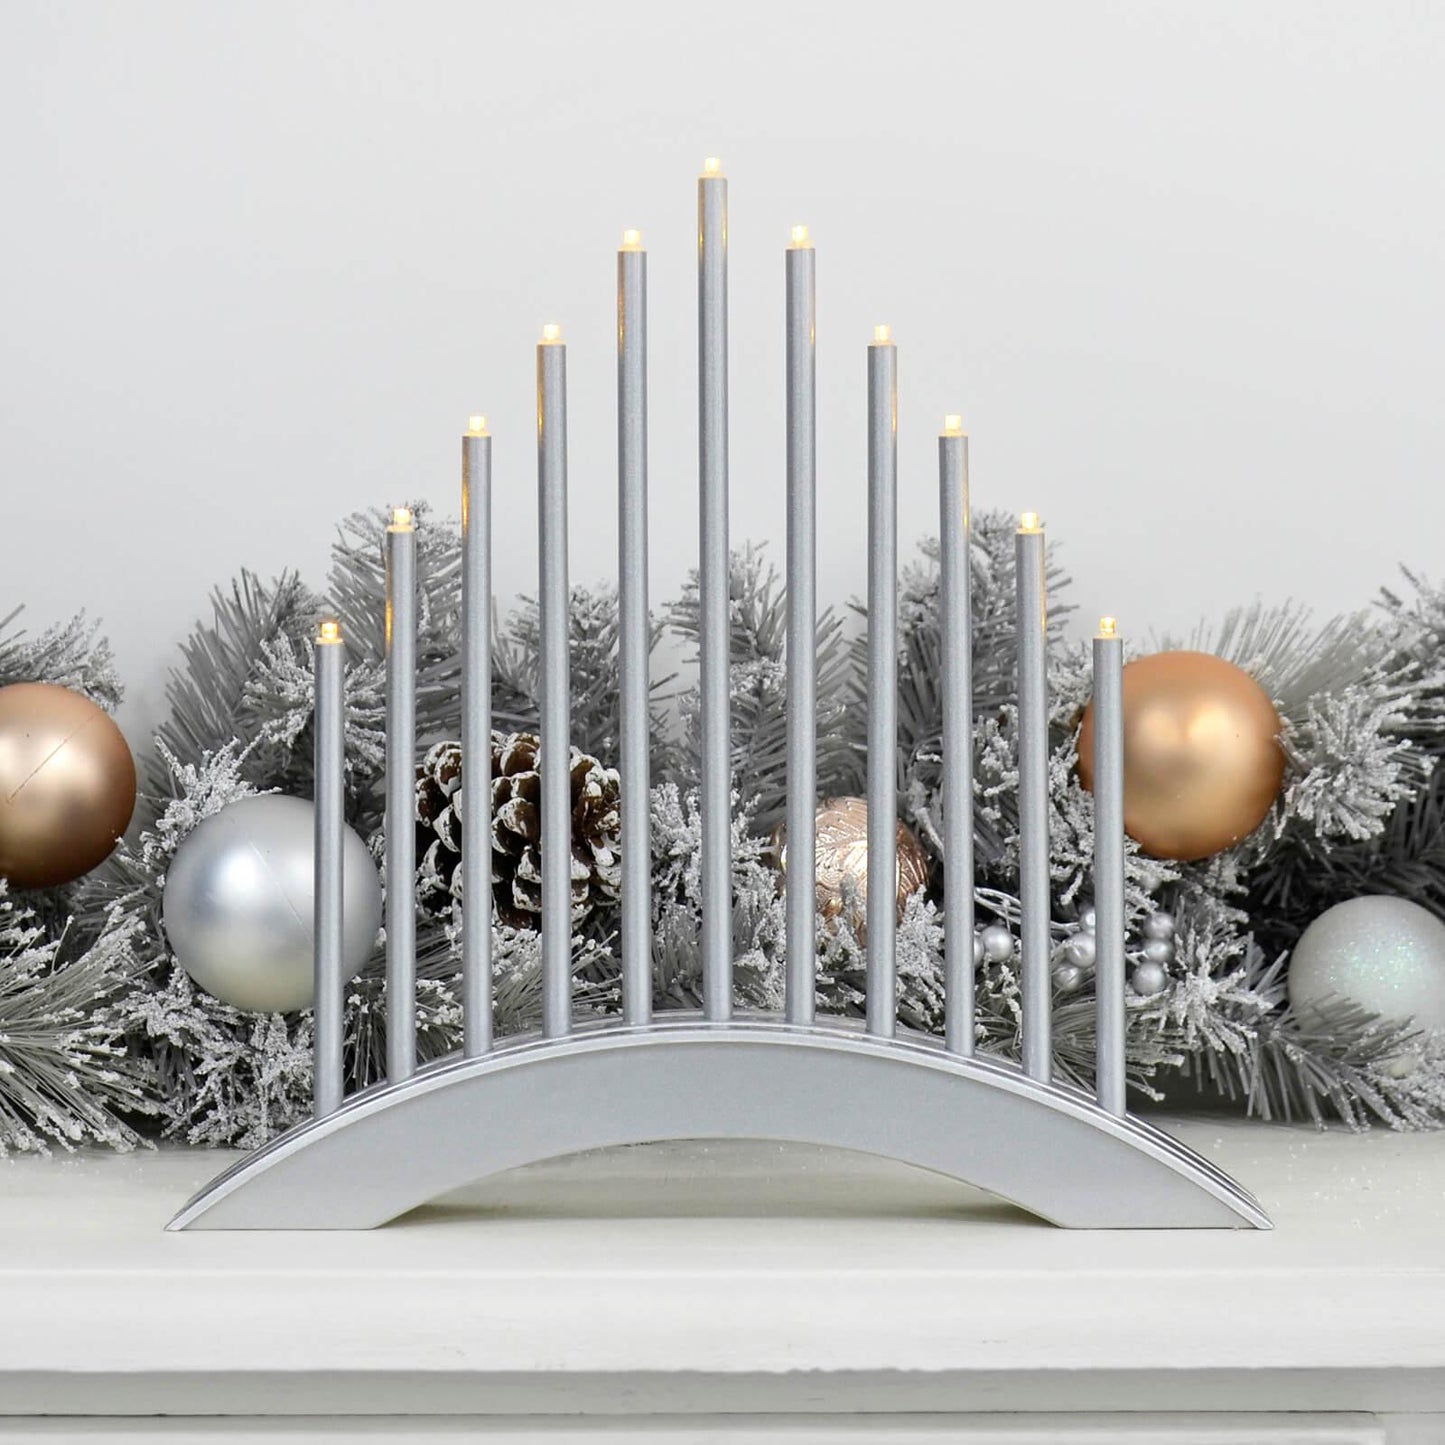 Mr Crimbo 11 Light Christmas Candle Bridge Arch LED 30cm - MrCrimbo.co.uk -XS7158 - Silver -Decorations